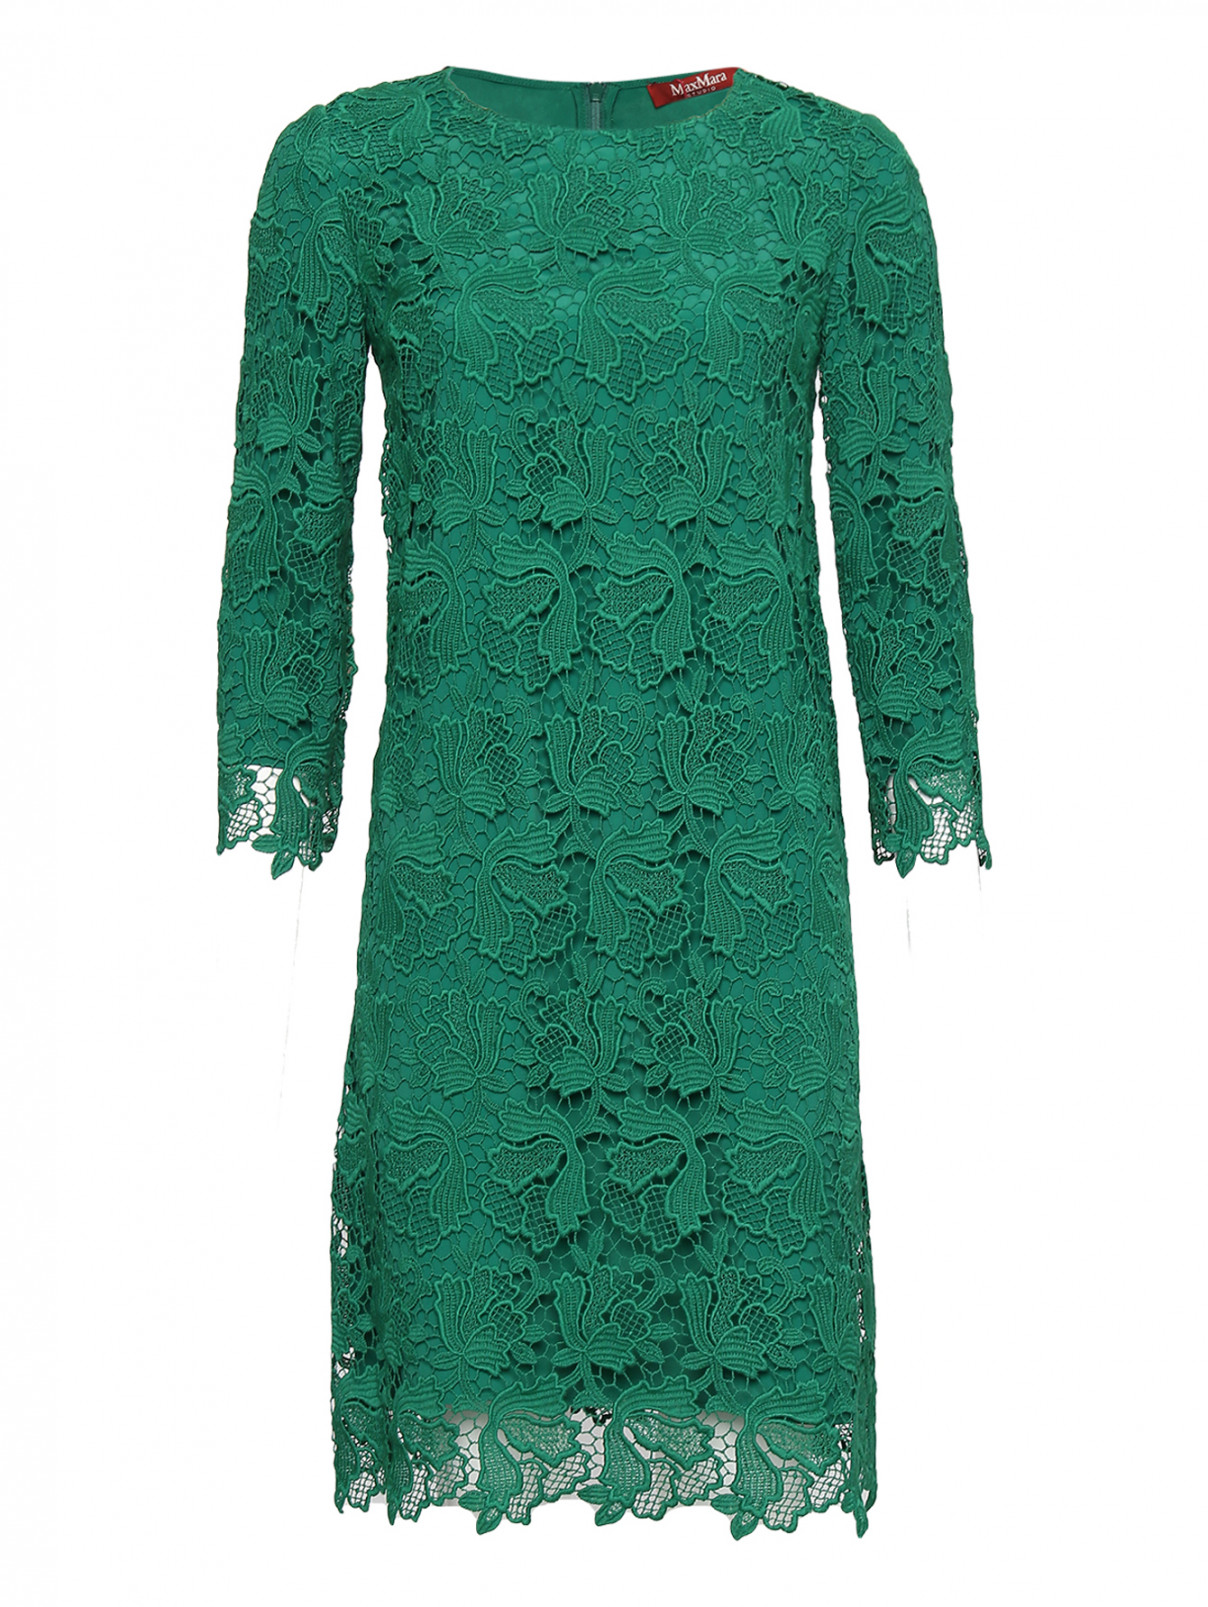 Платье из хлопка с кружевом Max Mara  –  Общий вид  – Цвет:  Зеленый